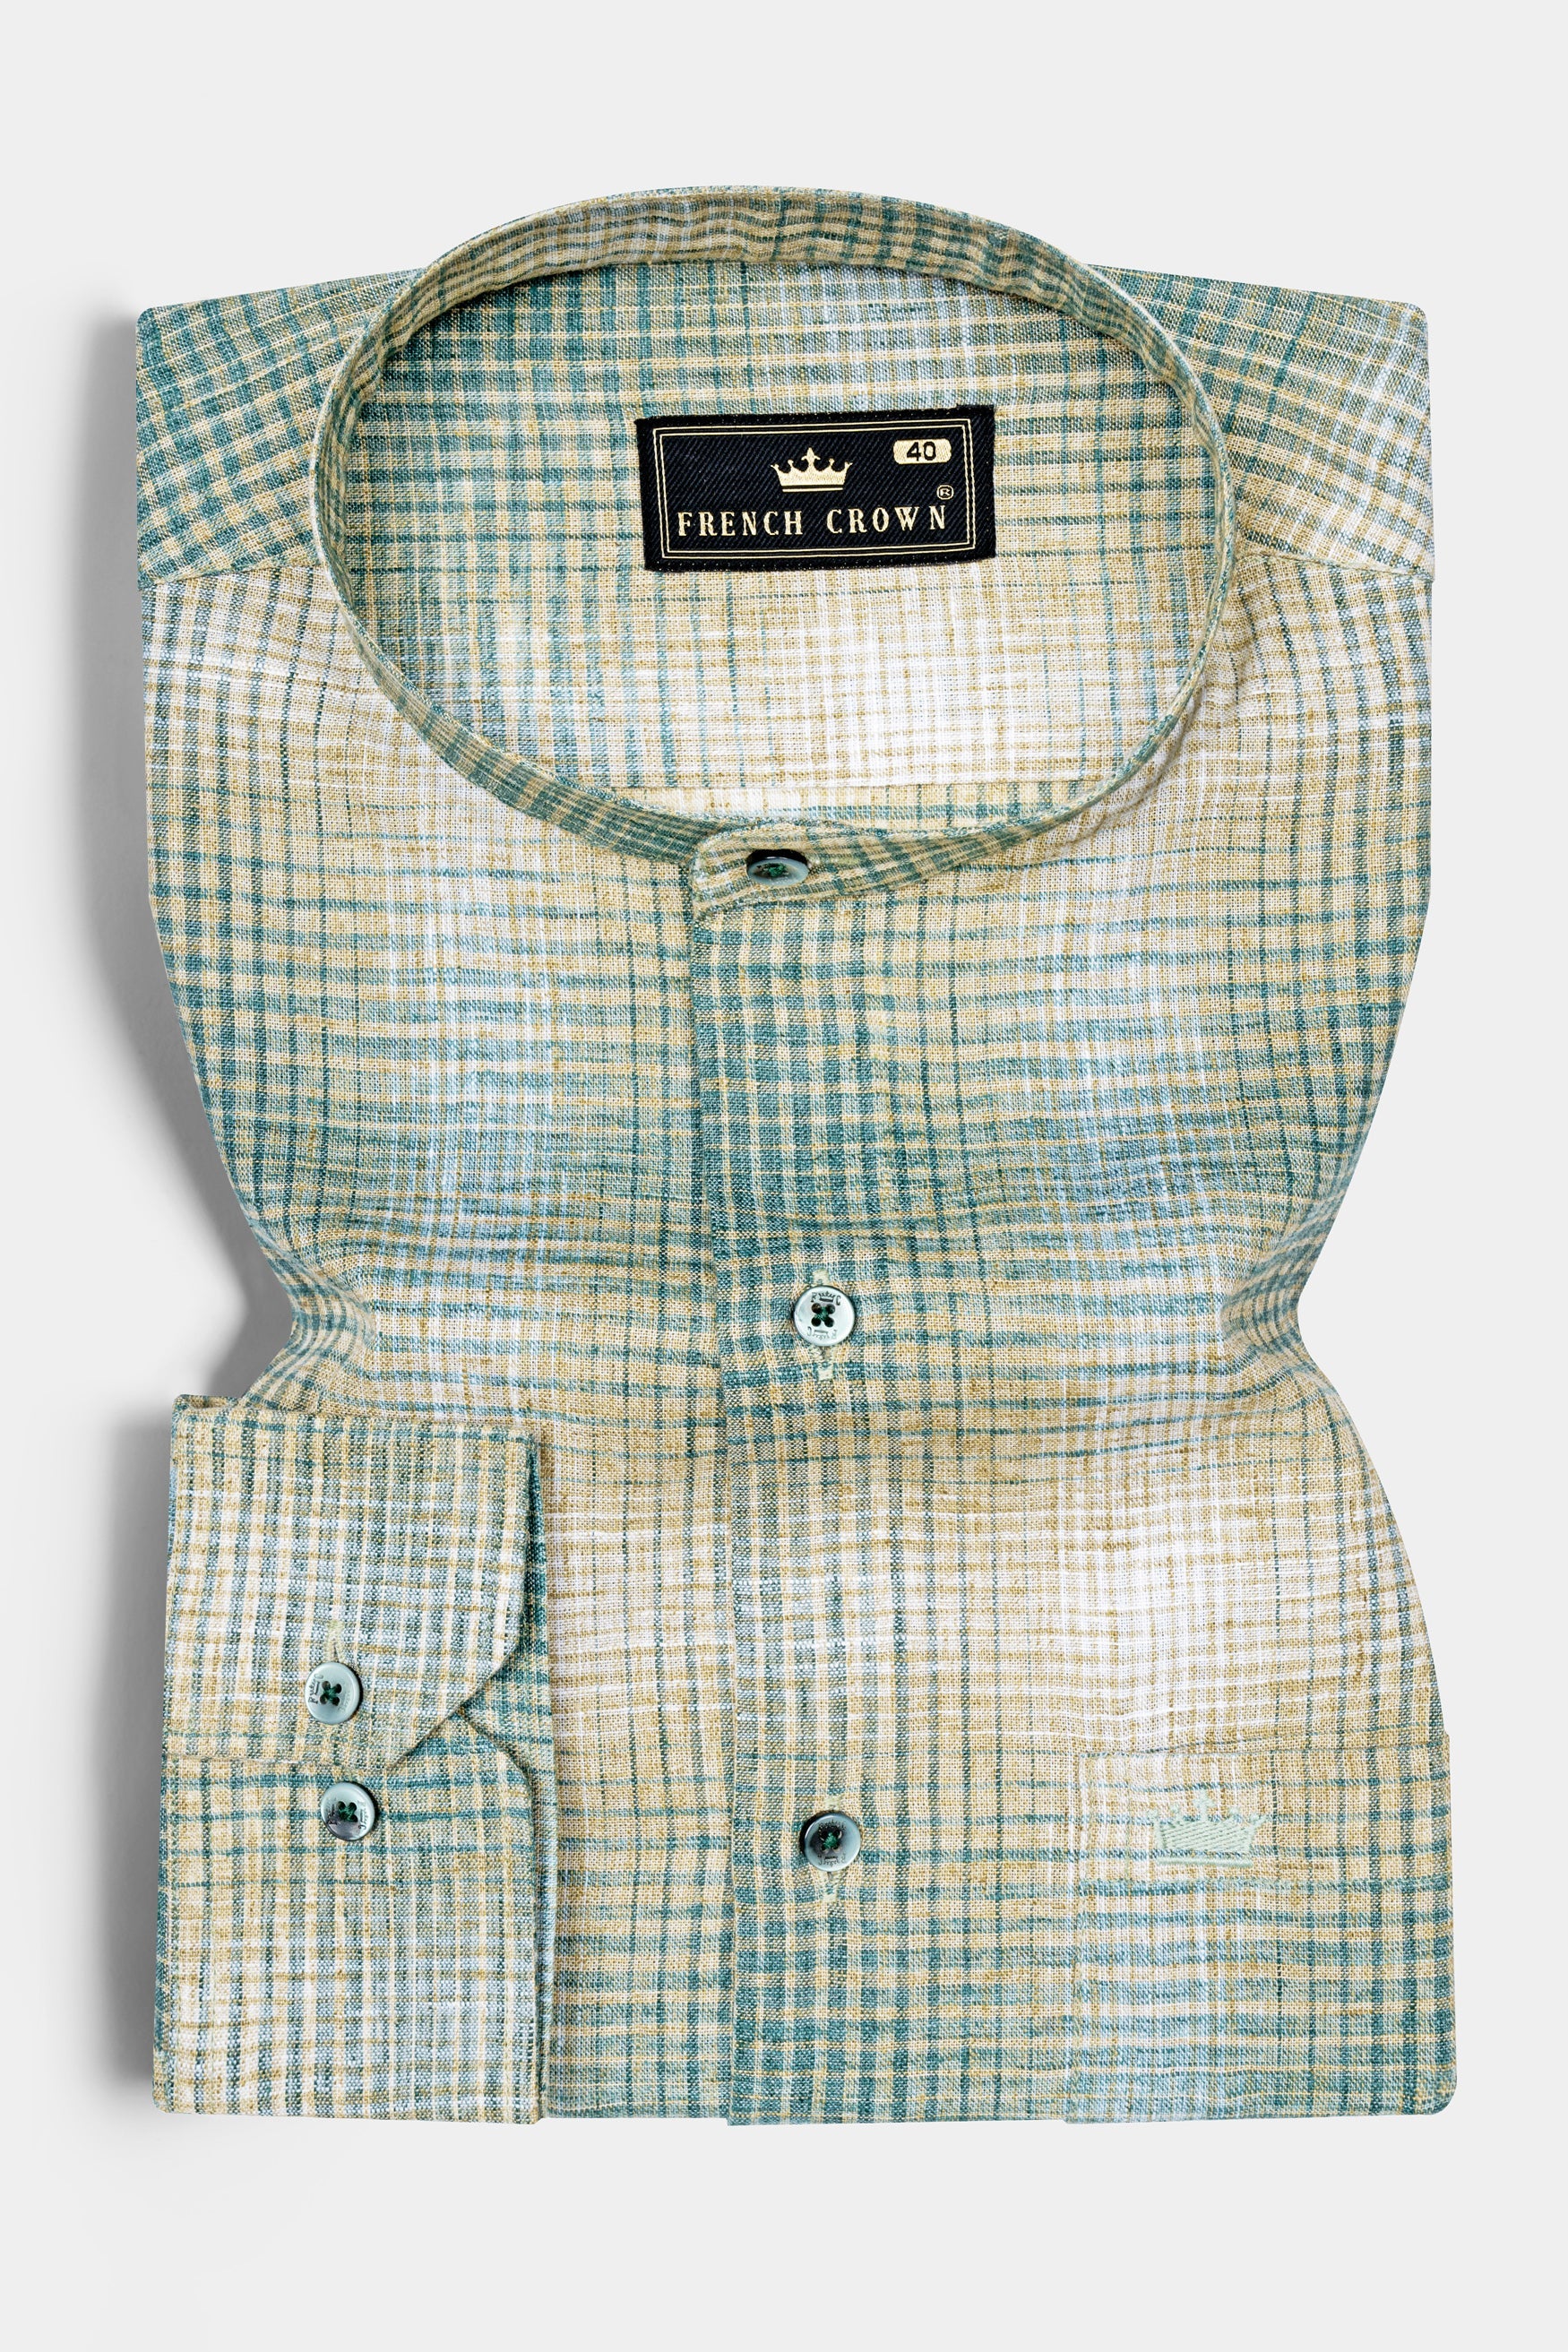 Horizon blue and Hillary Cream Checkered Luxuries Linen Shirt